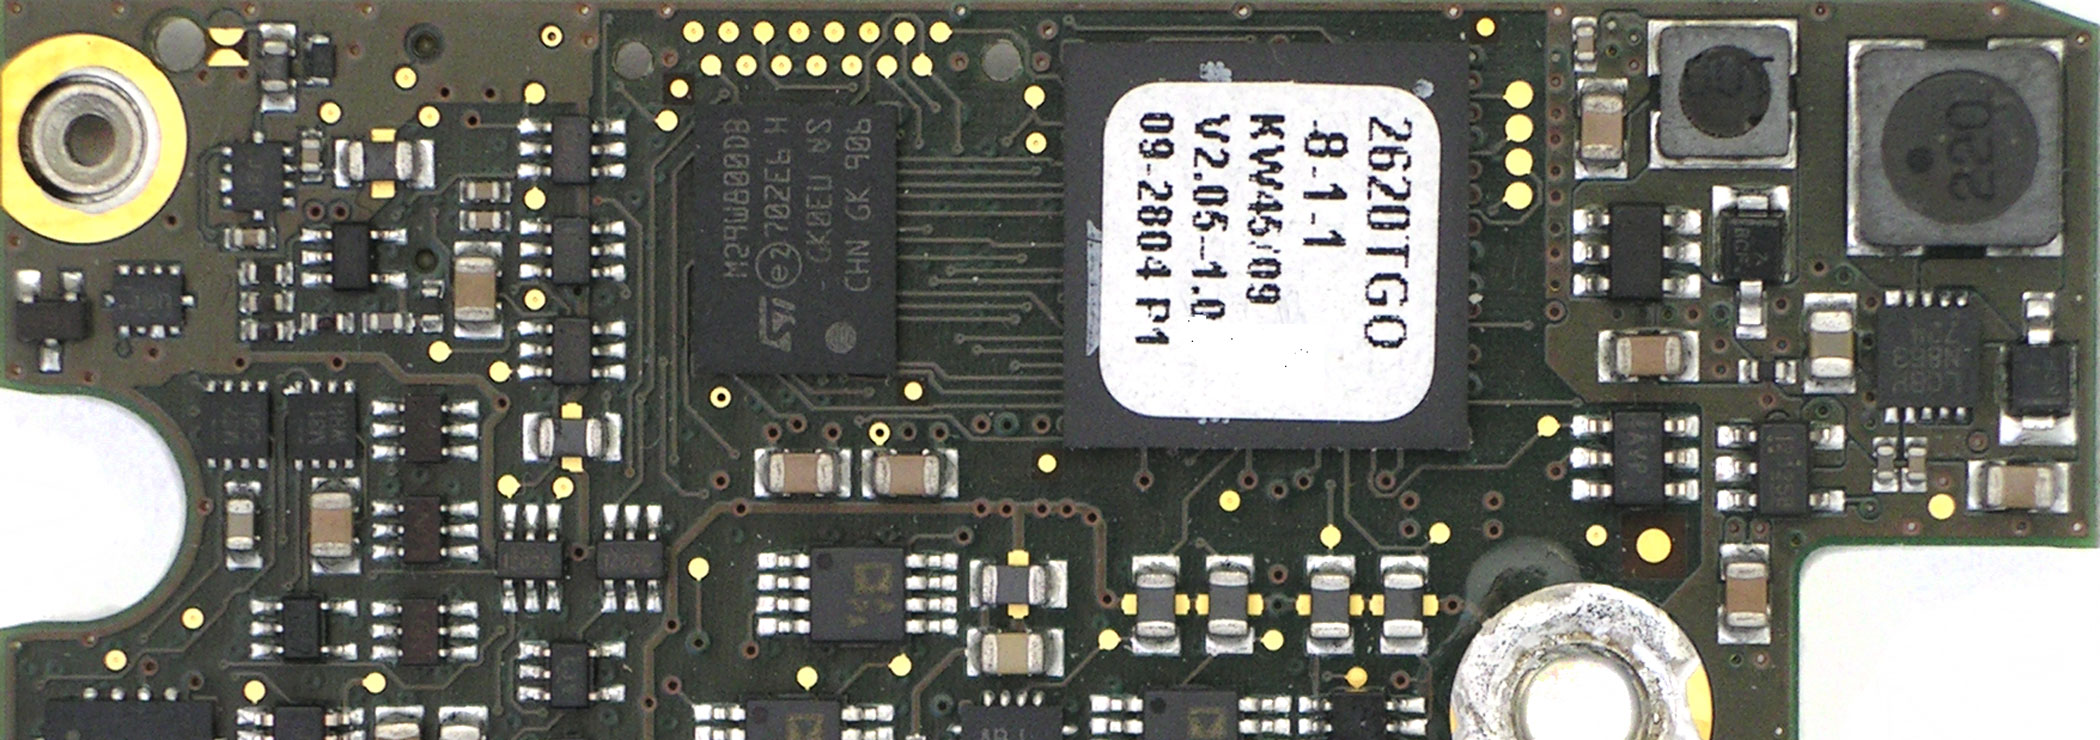 Embedded System: Leiterplatte mit zwei Prozessoren